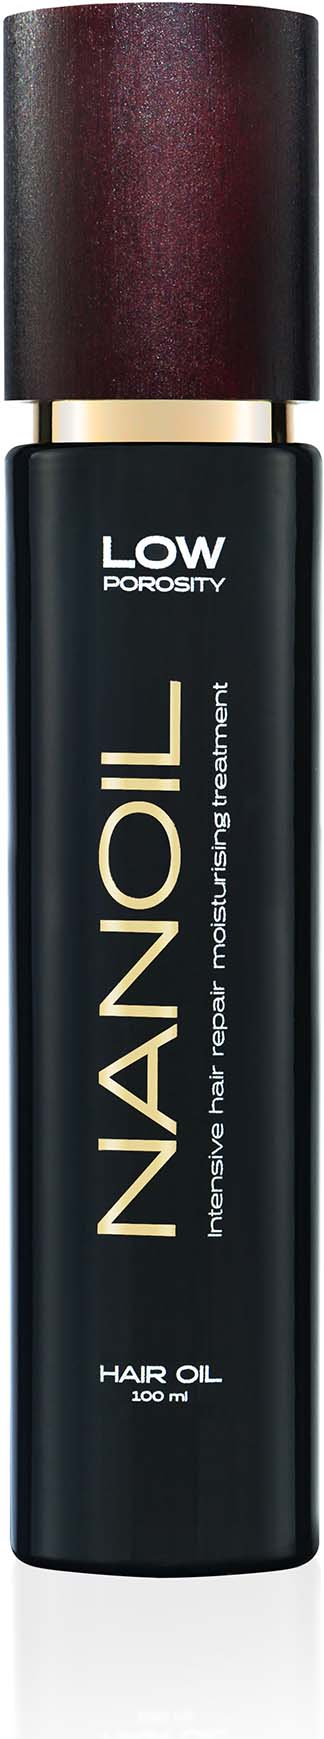 NANOLASH Low Porosity Hair Oil 100 ml –